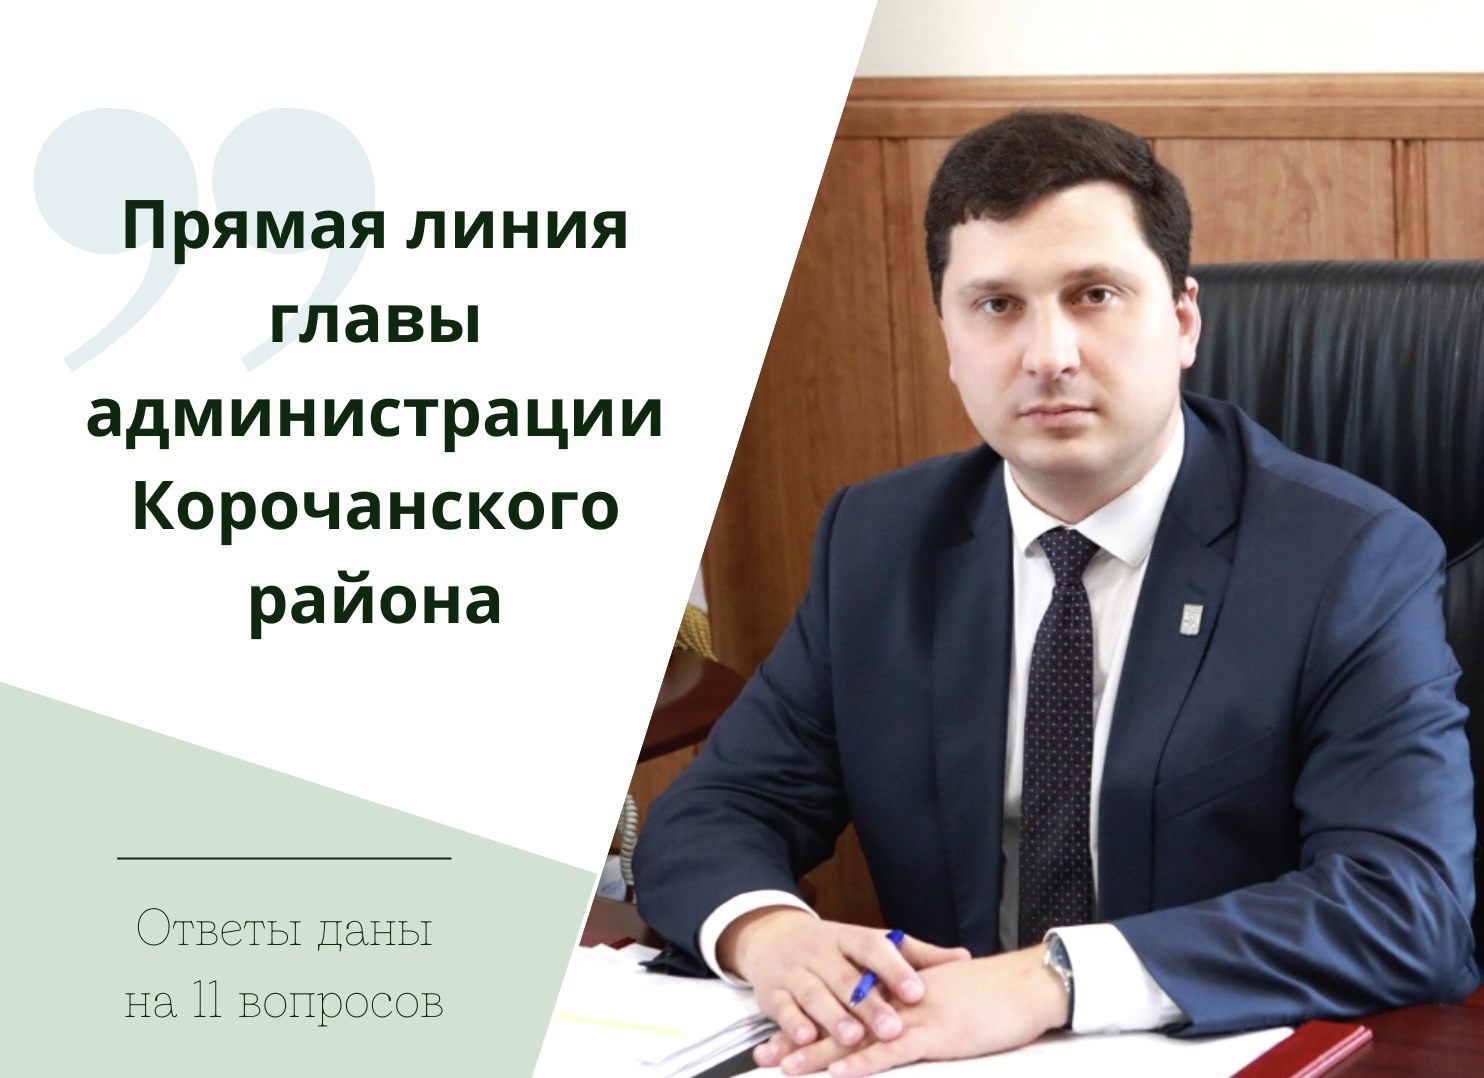 В ходе прямой линии главы администрации района Николая Нестерова были даны разъяснения на 11 вопросов, поступившие от пользователей социальных сетей.